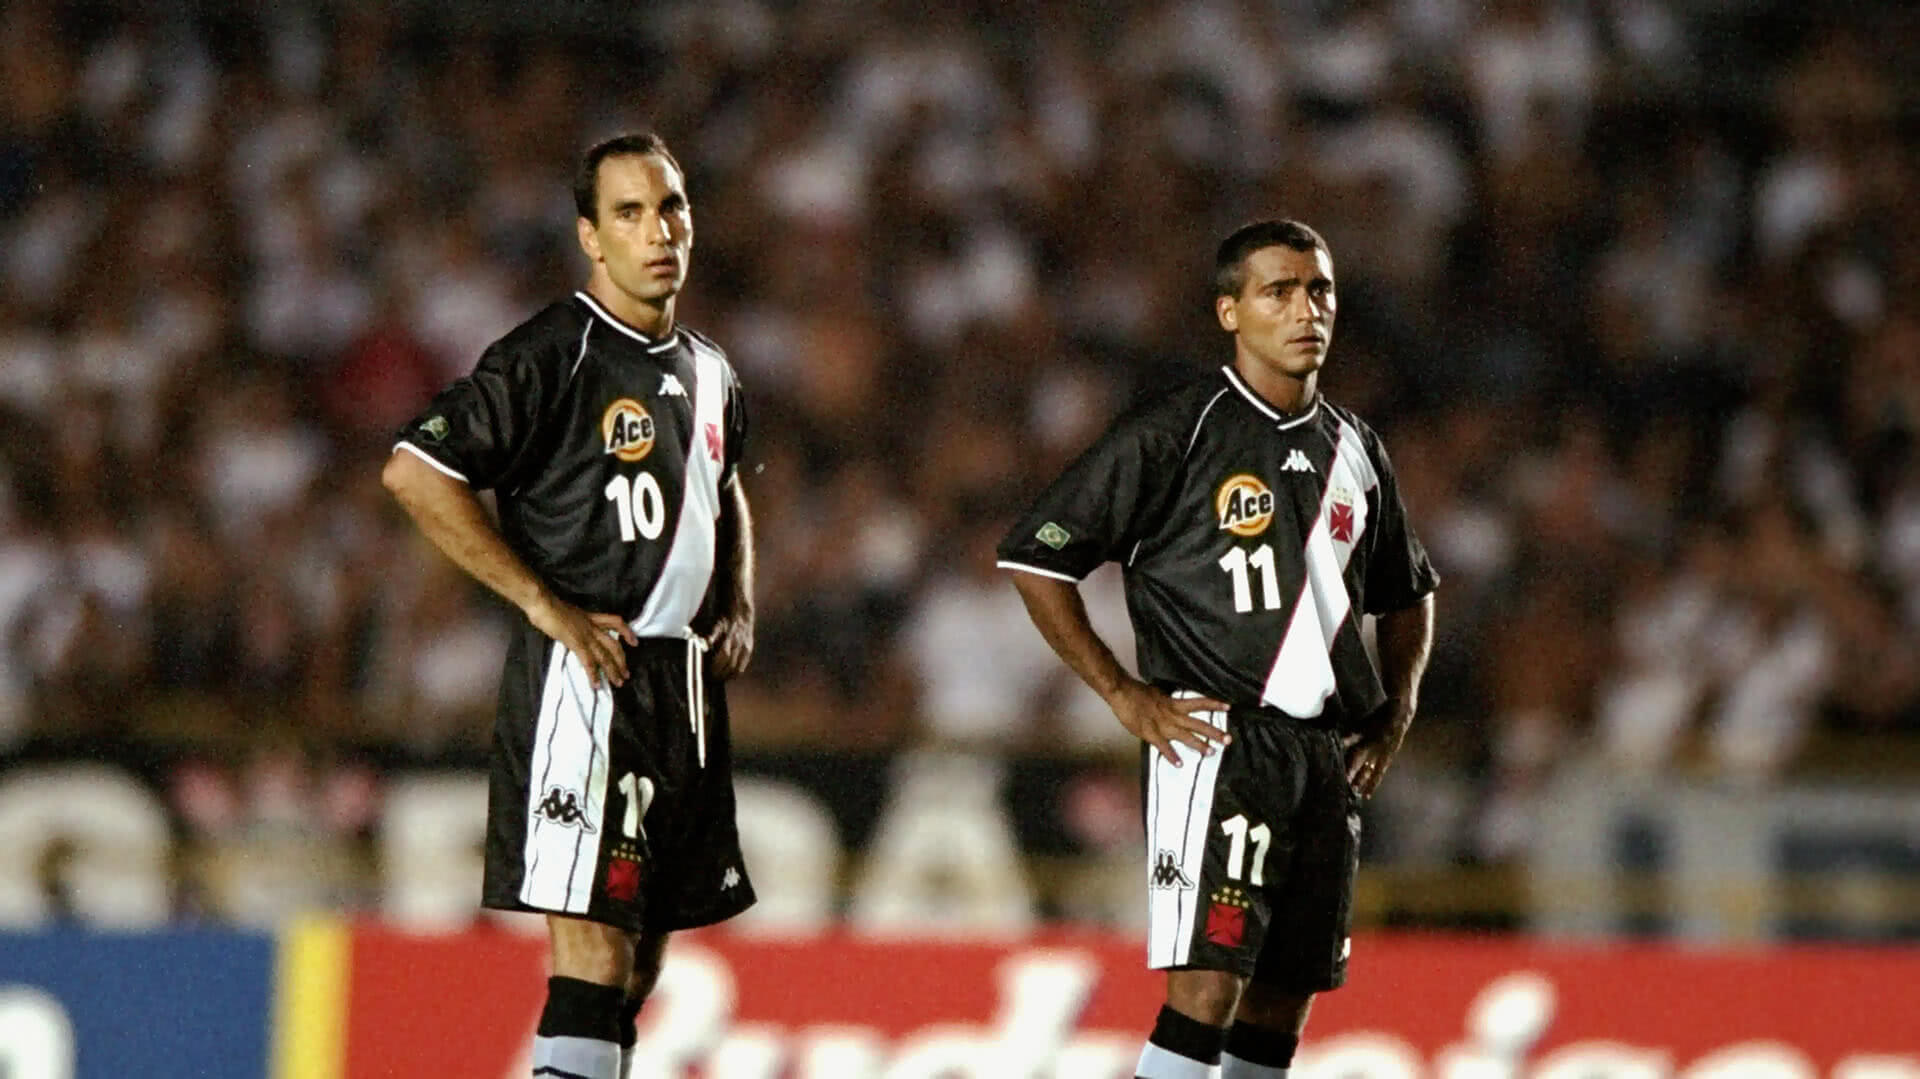 Edmundo e Romário em ação pelo Vasco no Mundial de Clubes de 2000